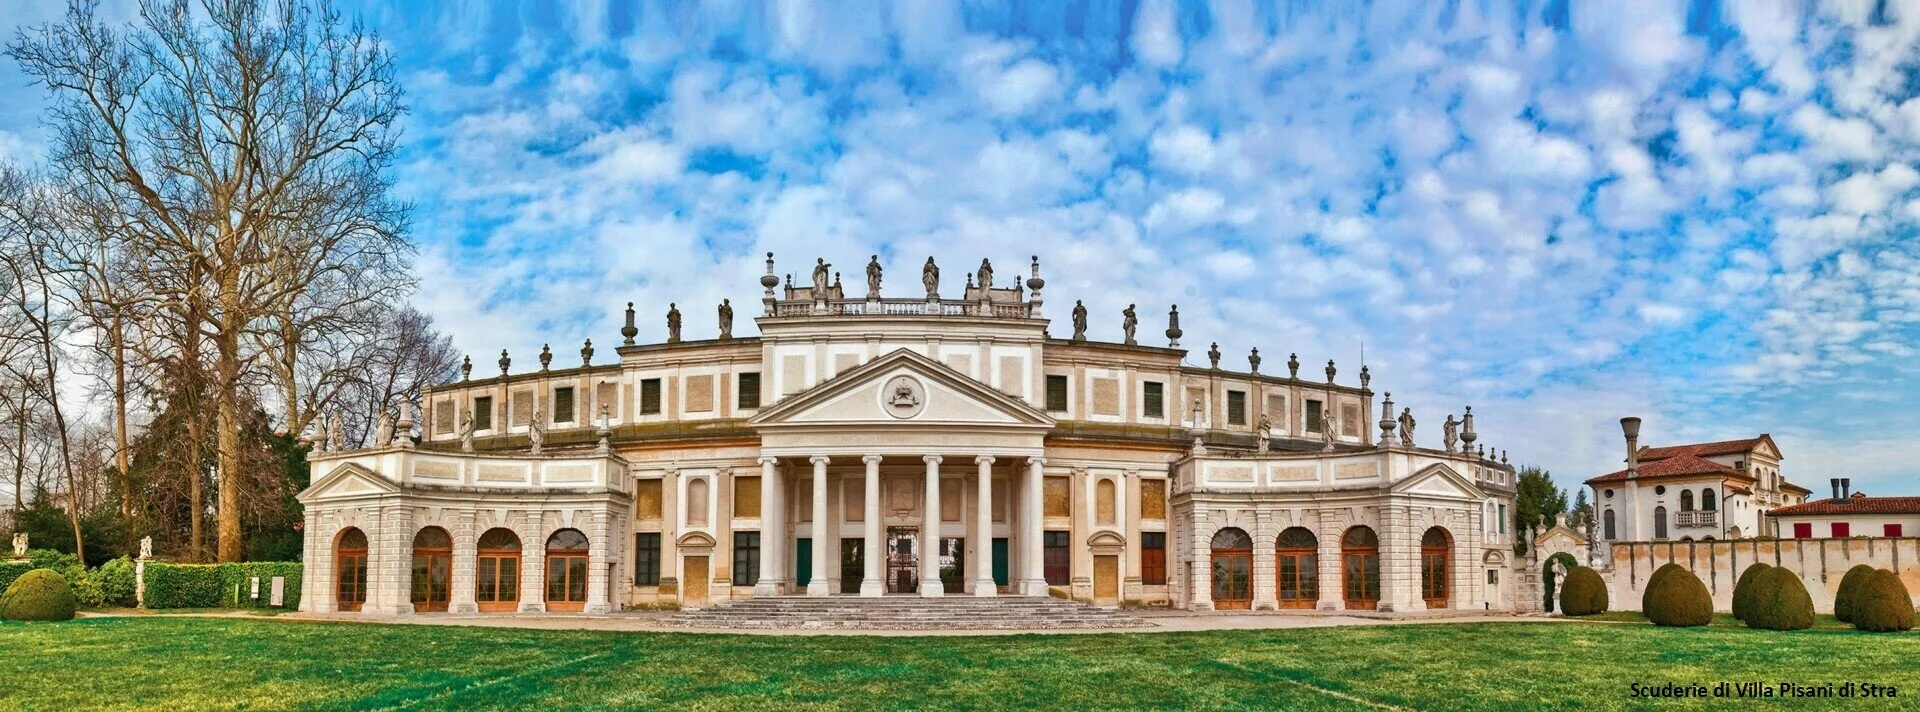 Scuderie di Villa Pisani